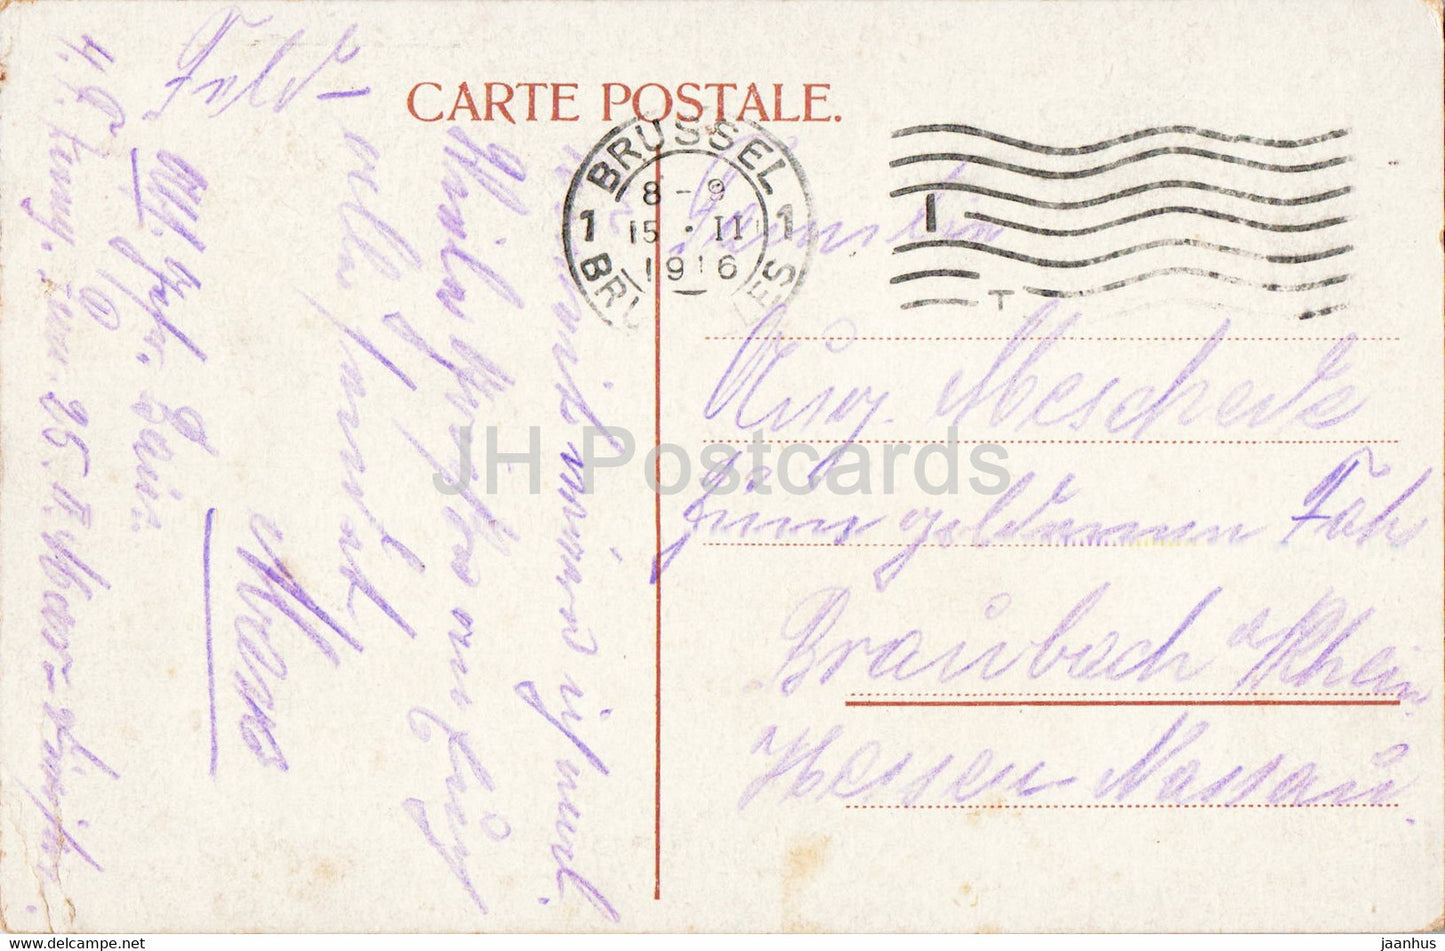 Bruxelles - Brussels - Grand Place - Maison du Roi et des Corporations - old postcard - 1916 - Belgium - used